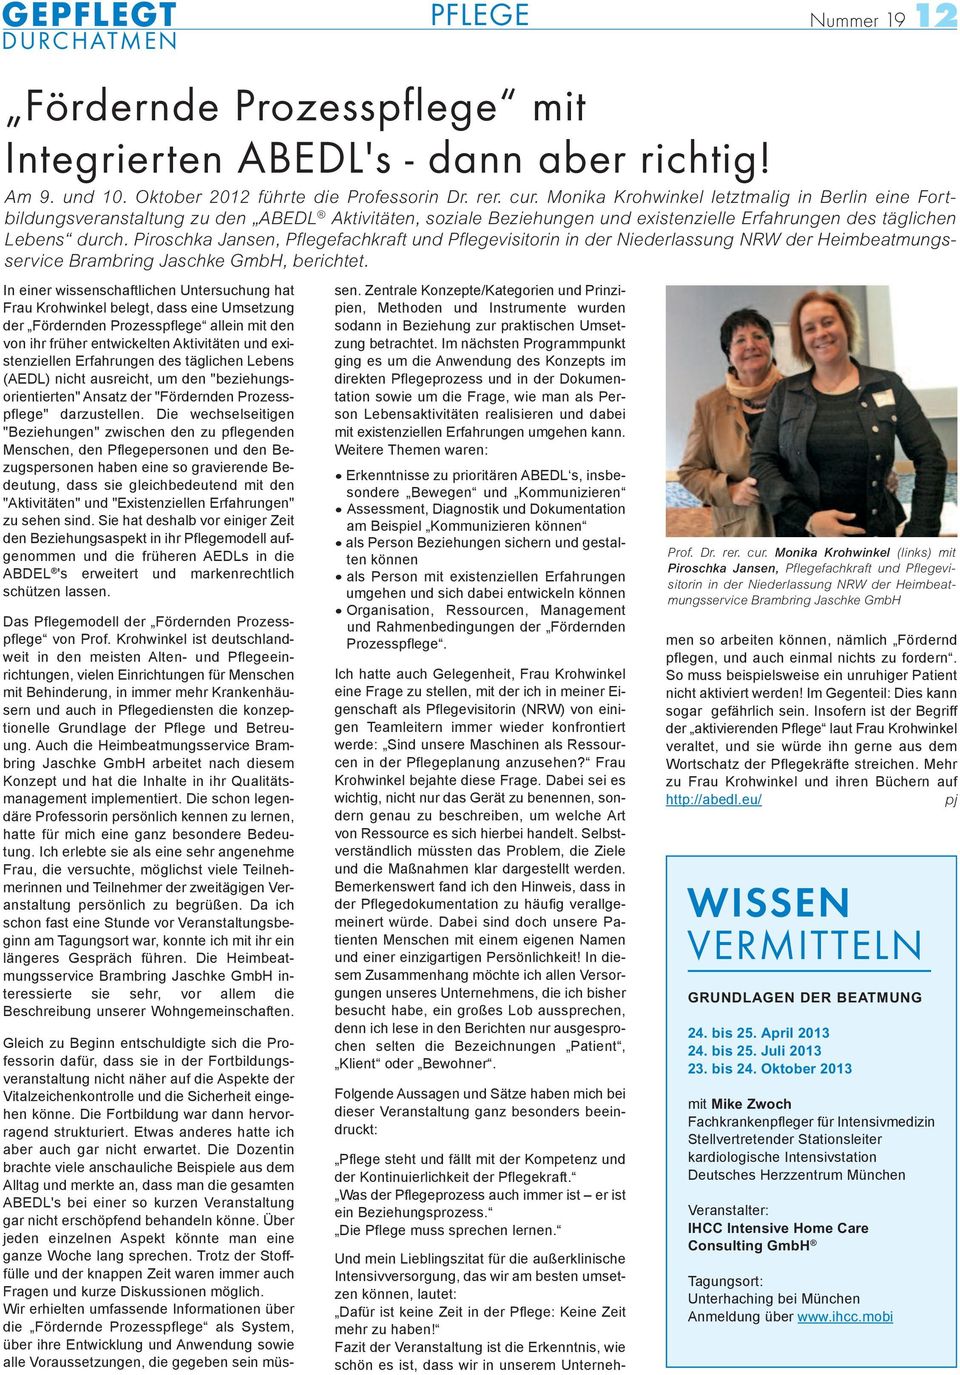 Piroschka Jansen, Pflegefachkraft und Pflegevisitorin in der Niederlassung NRW der Heimbeatmungsservice Brambring Jaschke GmbH, berichtet.